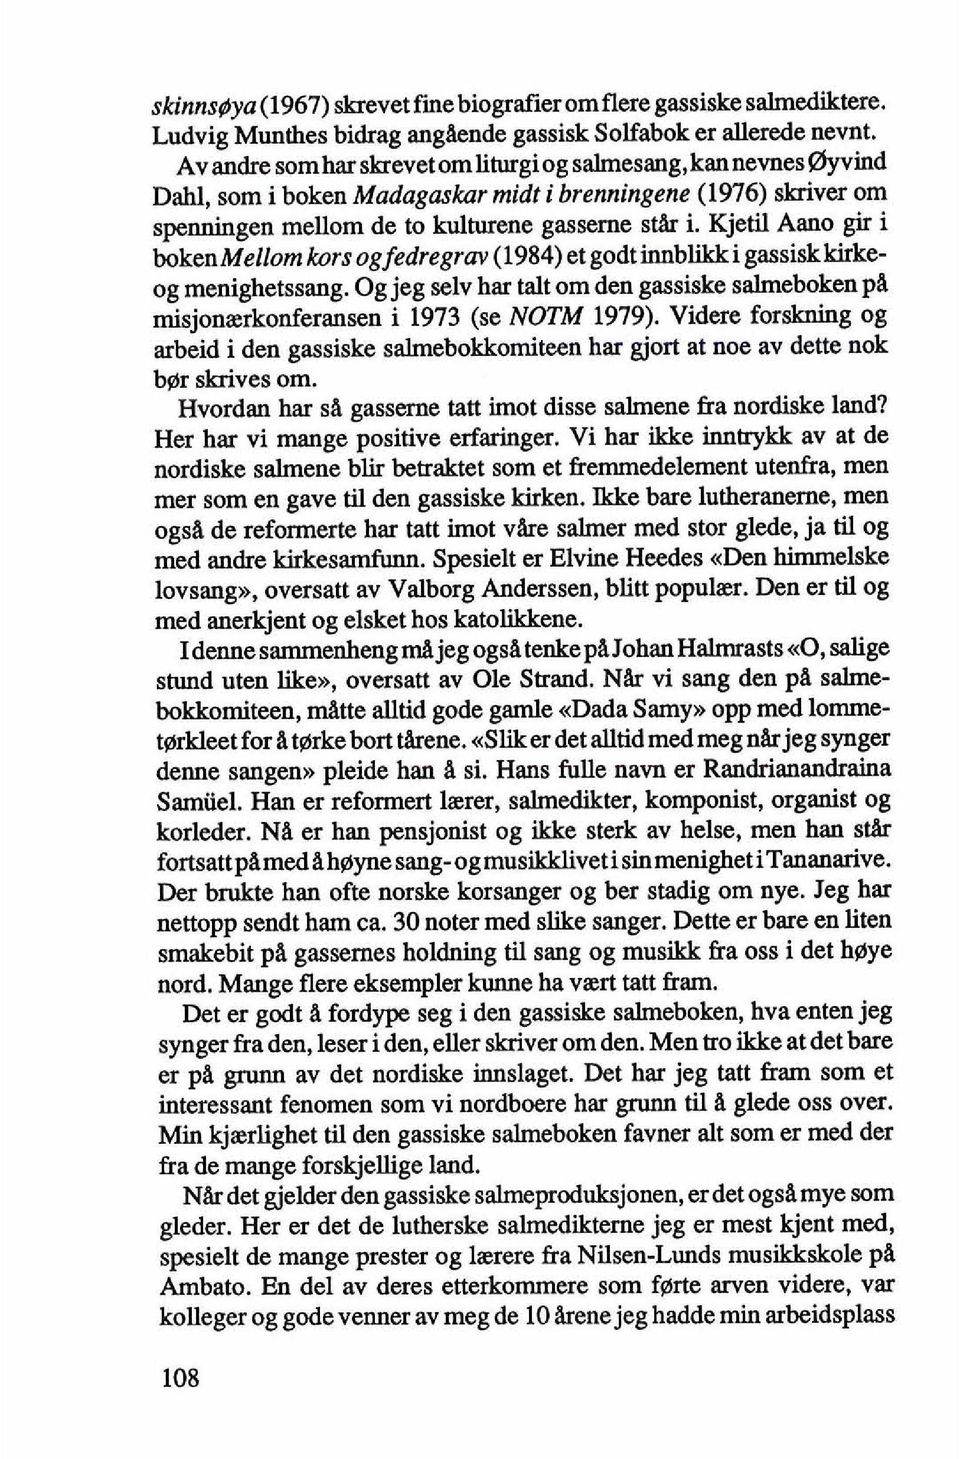 Kjetil Aano gir i bokenmellom kors og fedregrav (1984) et godt innbwrki gassiskkirke og menighetssang. Og jeg selv har talt om den gassiske salmeboken pa misjonierkonferansen i 1973 (se NOTM 1979).